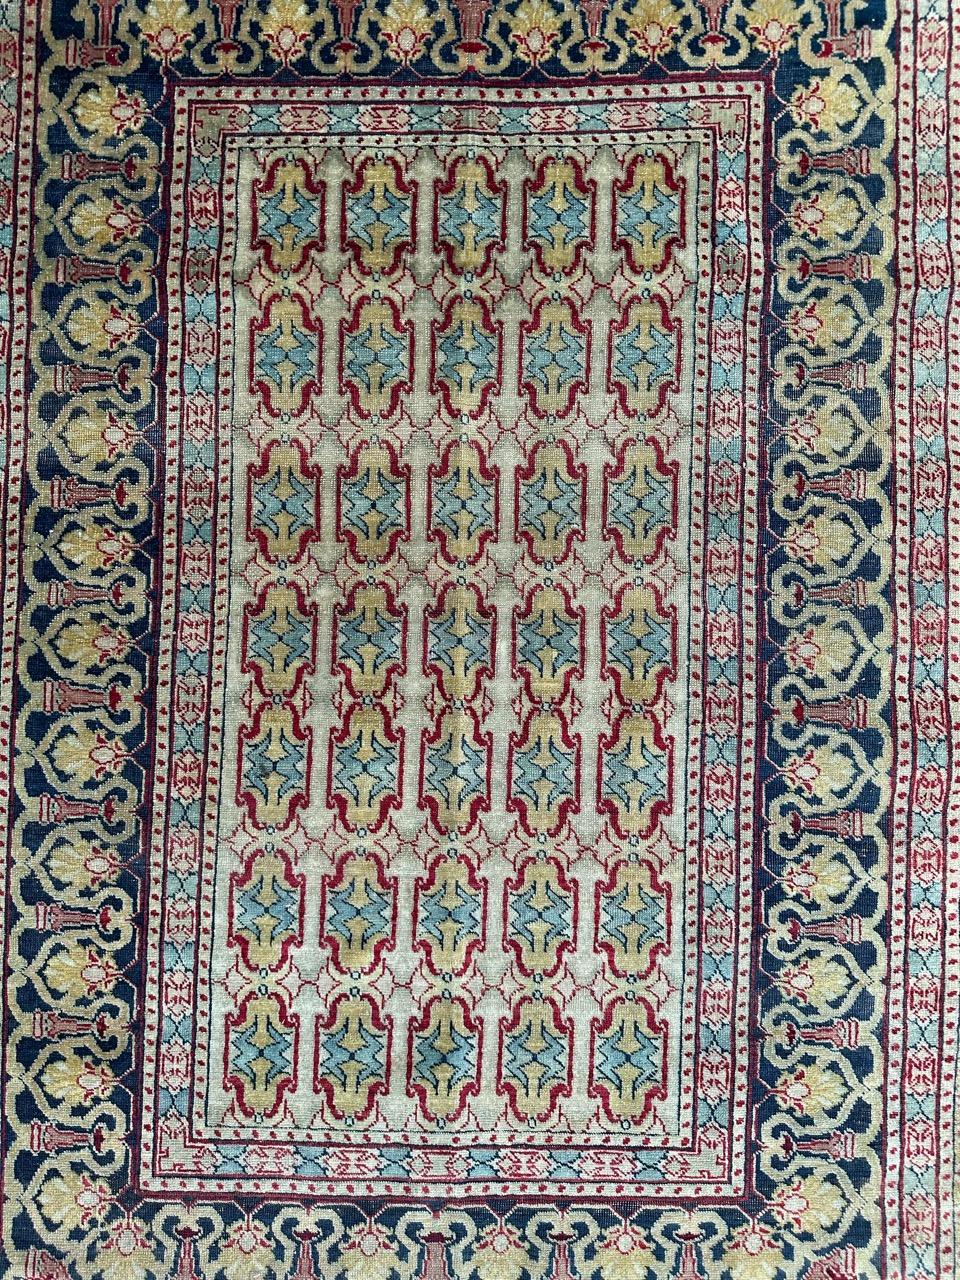 Voici un chef-d'œuvre exquis : Le très beau tapis Tabriz du milieu du siècle. Plongez dans l'histoire avec cette merveille nouée à la main en 1944, ornée d'un captivant motif all-over et de couleurs naturelles sereines. Fabriqué méticuleusement avec